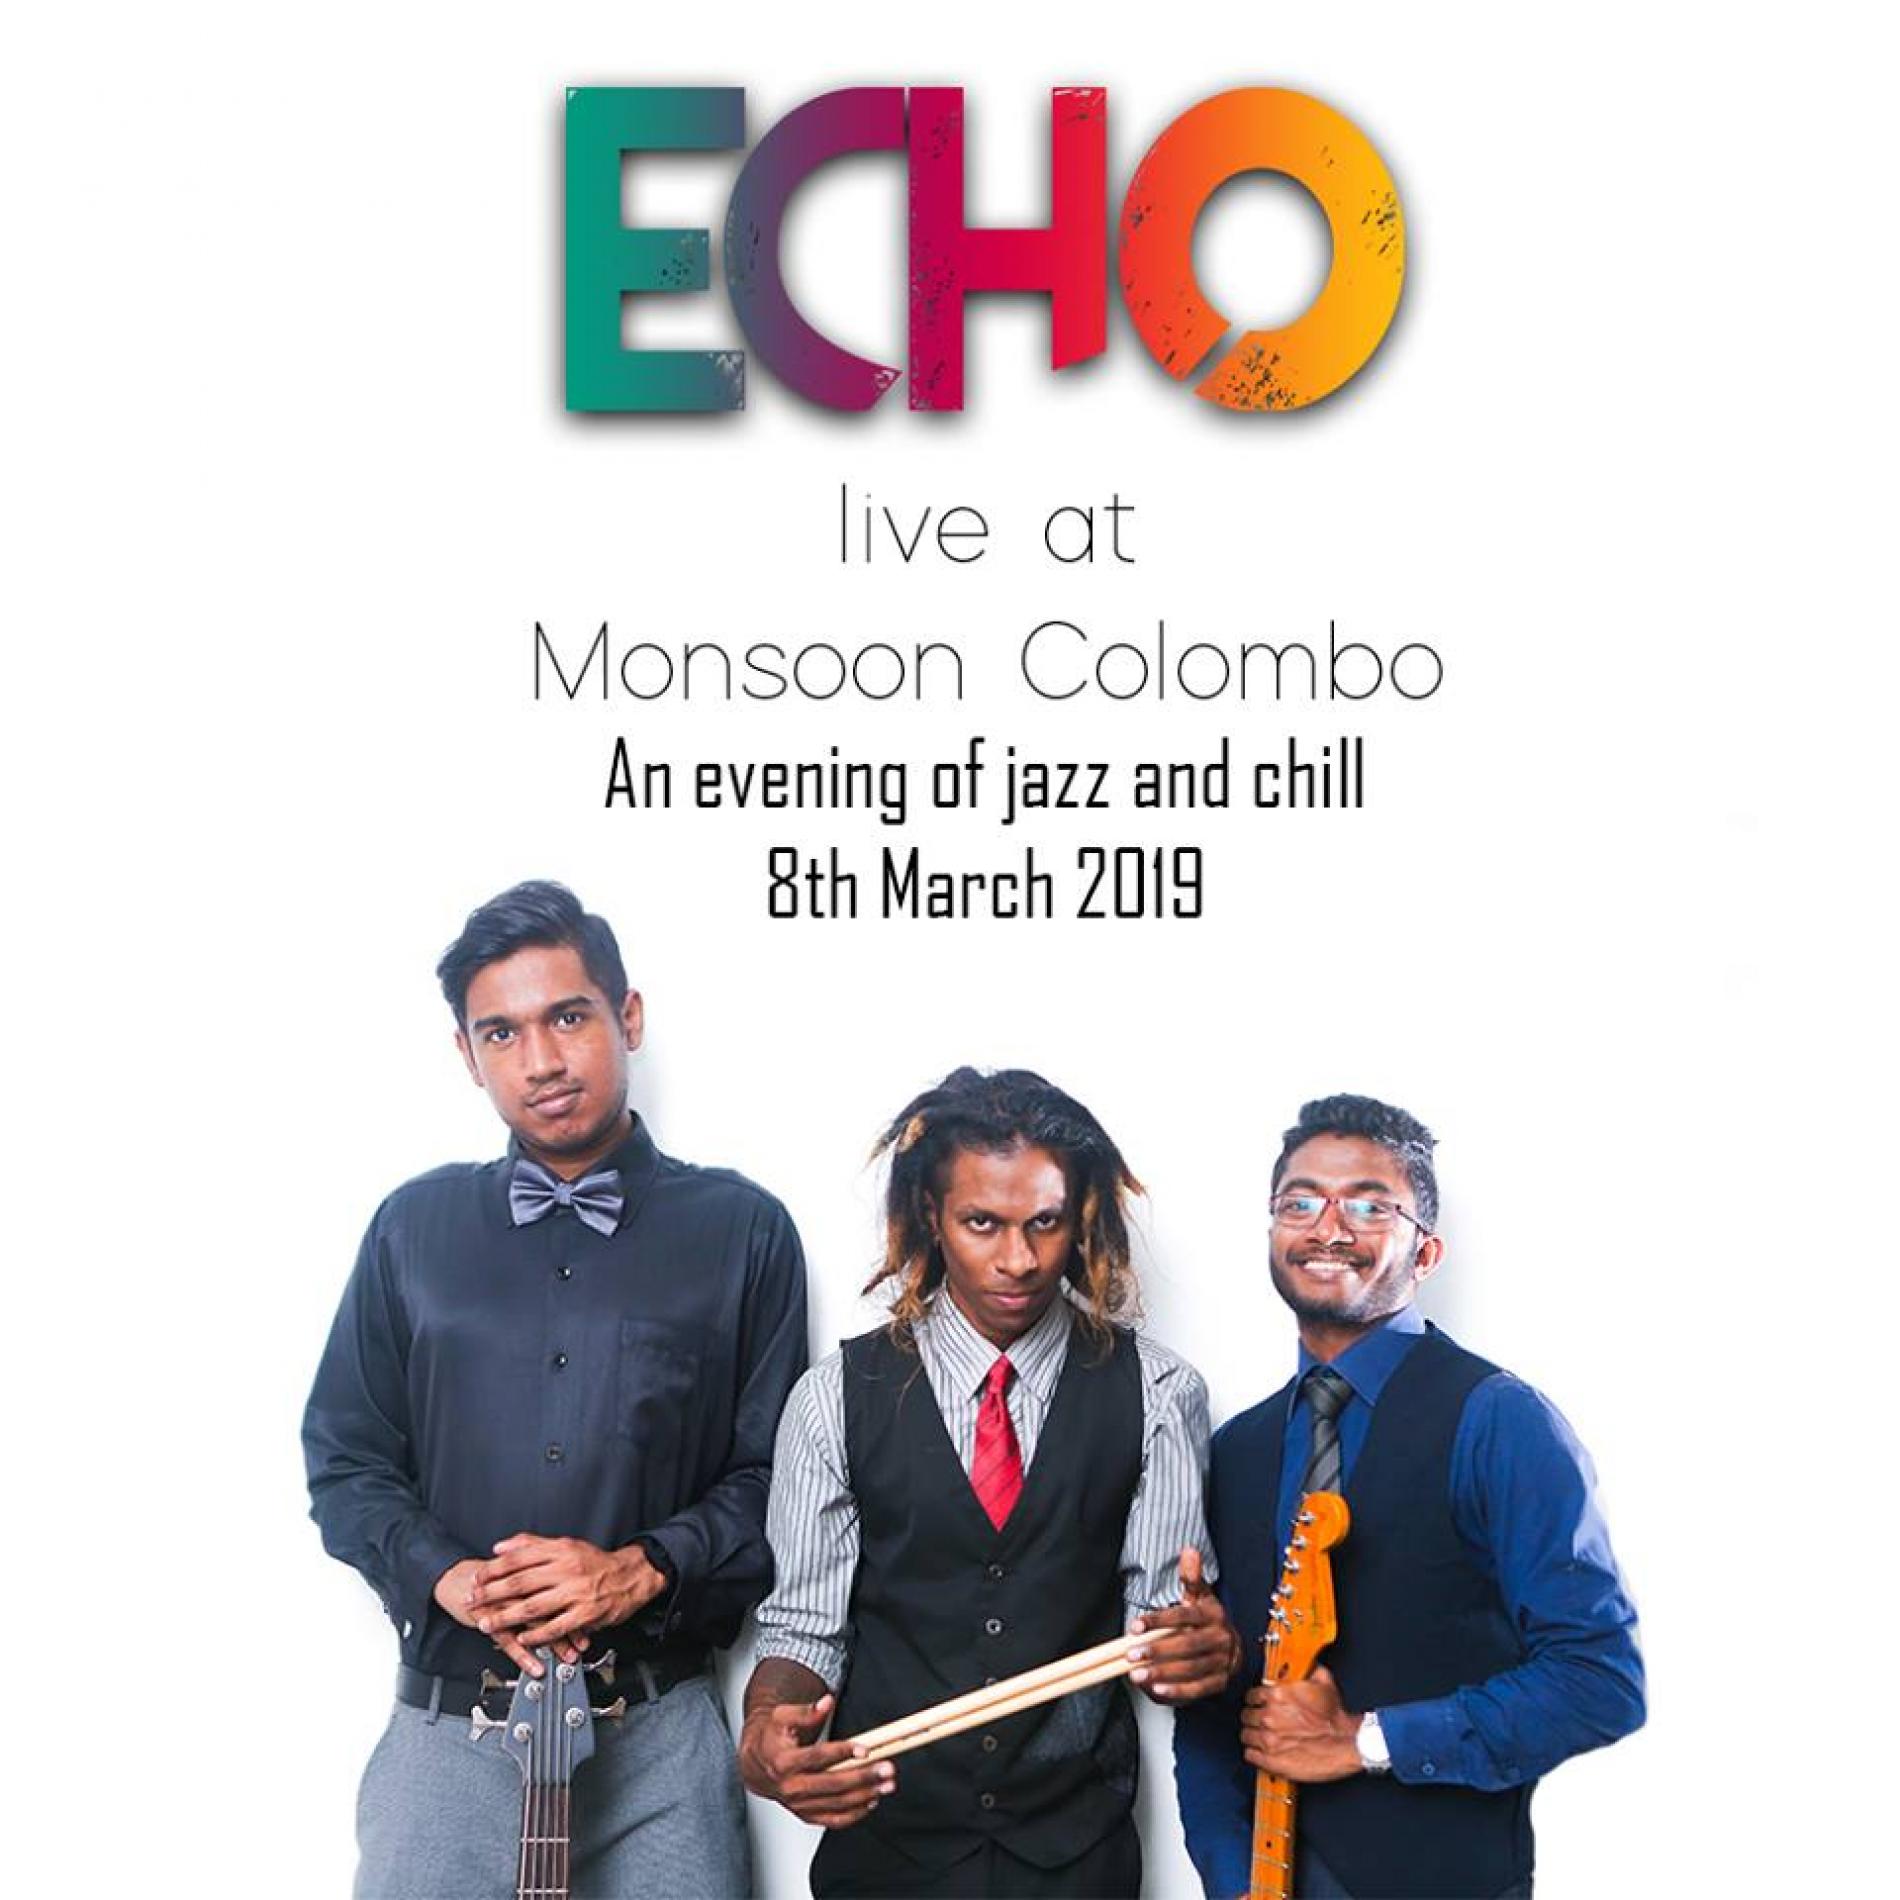 Echo Live @ Monsoon Colombo